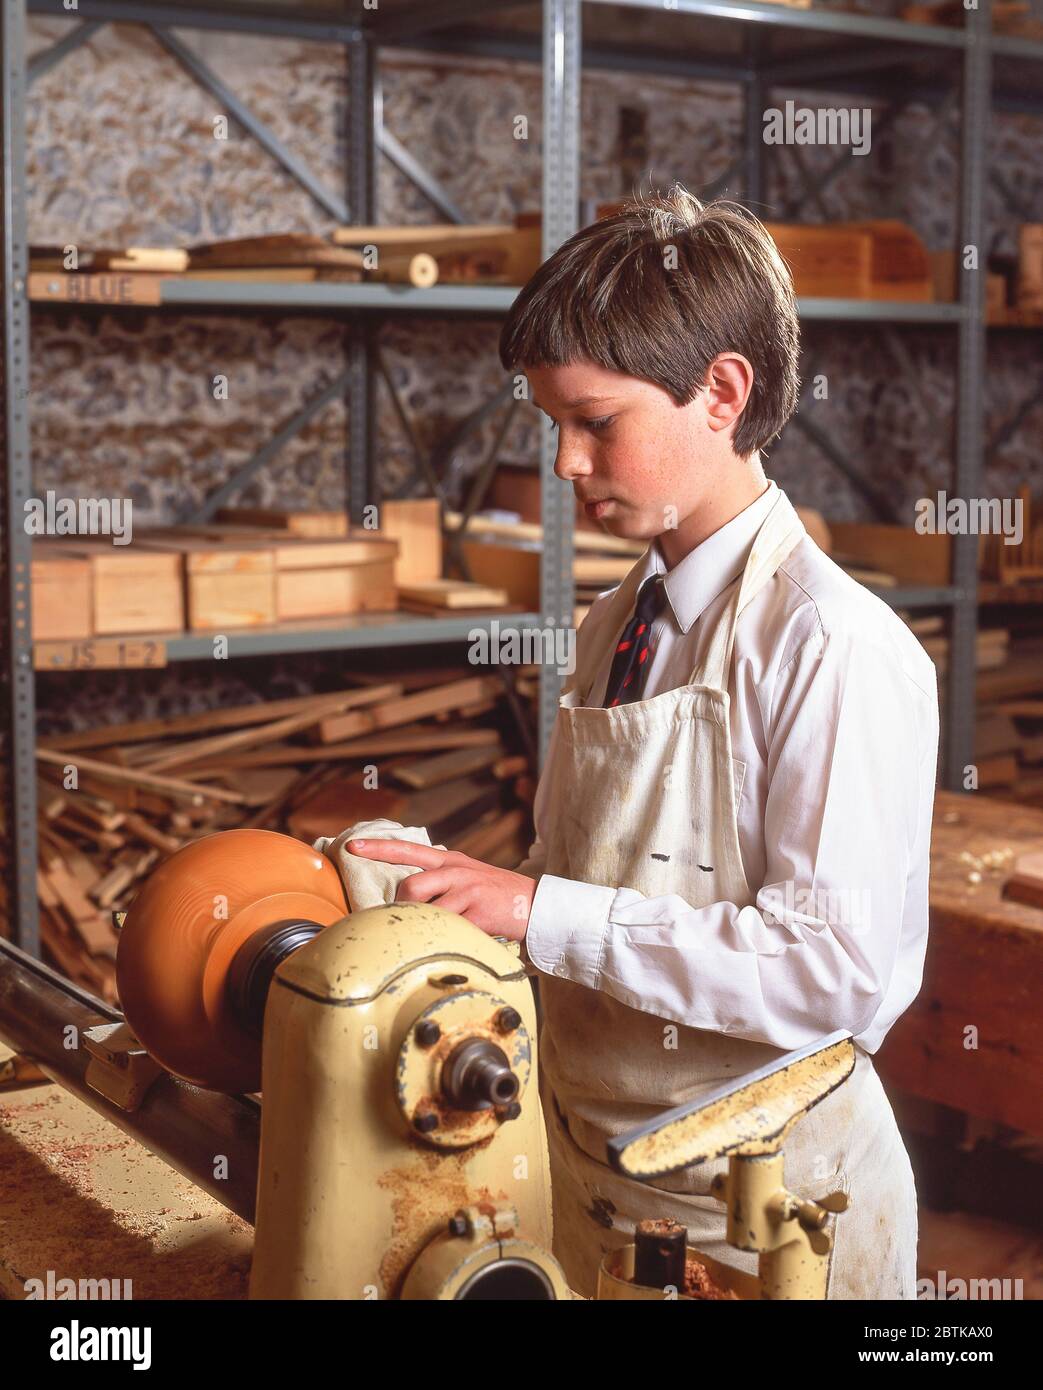 Jeune garçon utilisant le tour en classe de travail du bois, Surrey, Angleterre, Royaume-Uni Banque D'Images